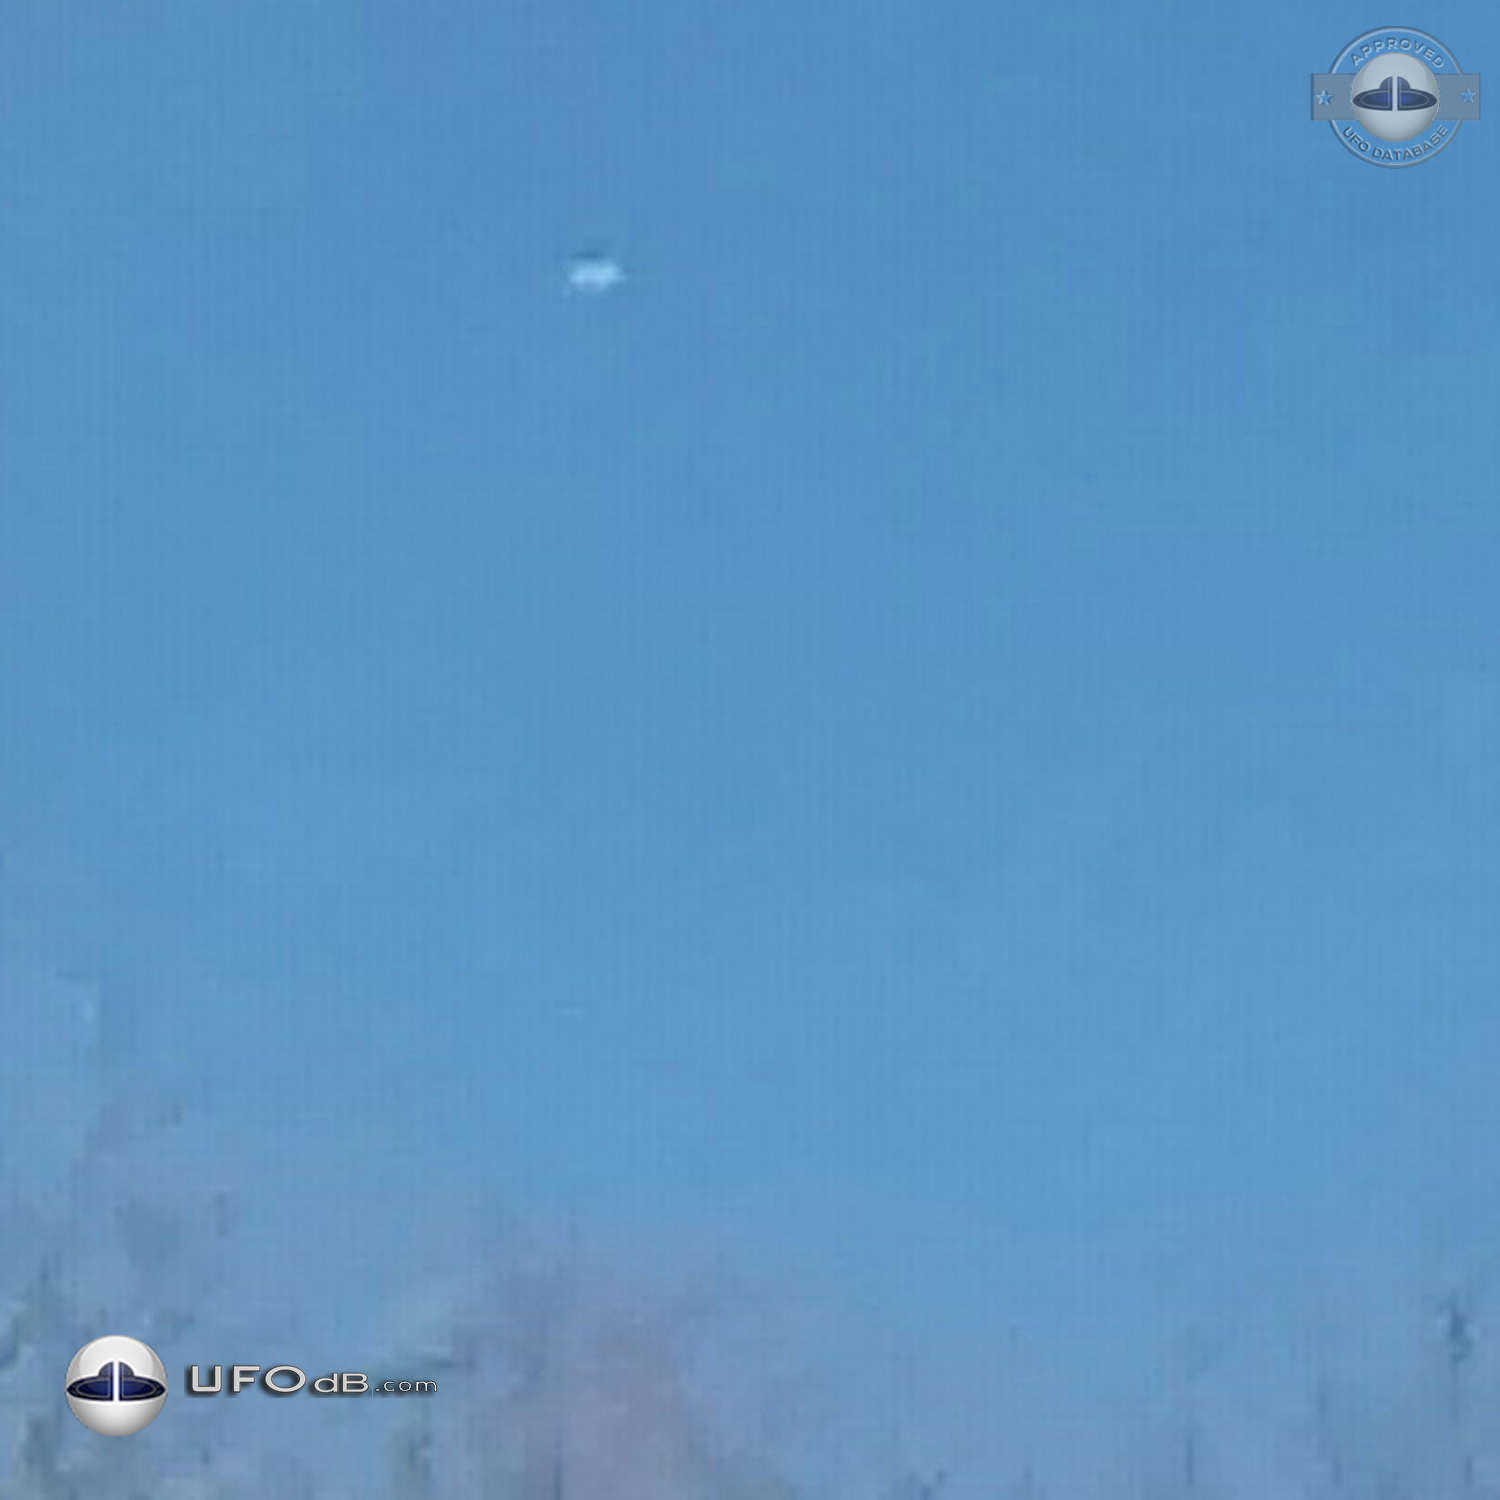 Silent silver Disk UFO gliding in the sky Dalton Pennsylvania USA 2015 UFO Picture #669-2